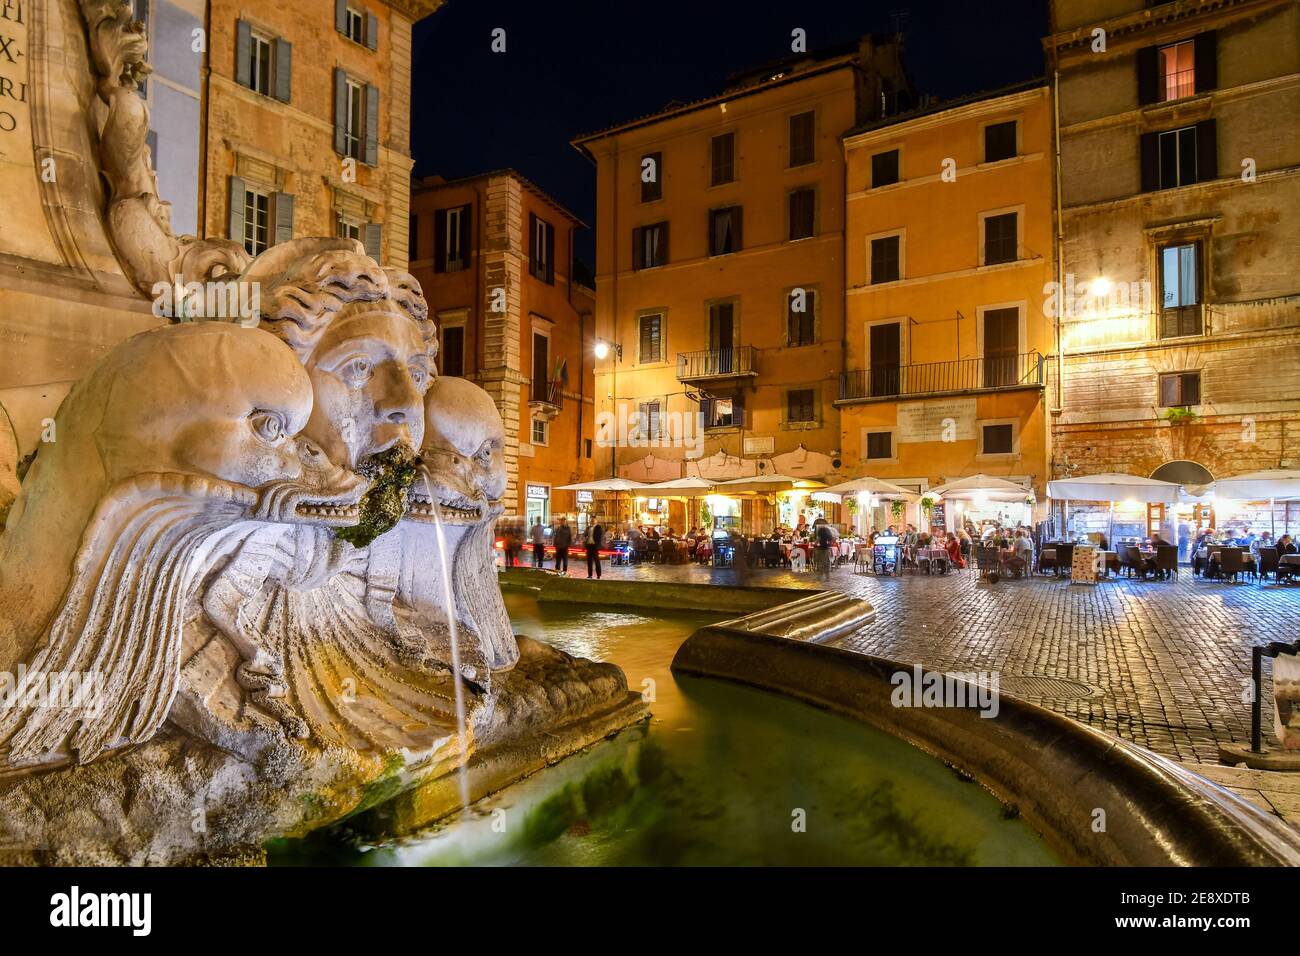 Primer plano del panteón de Trevi o la Fontana del Panteón, en la Piazza della Rotonda, por la noche, con cafés y tiendas iluminadas en Roma Italia Foto de stock